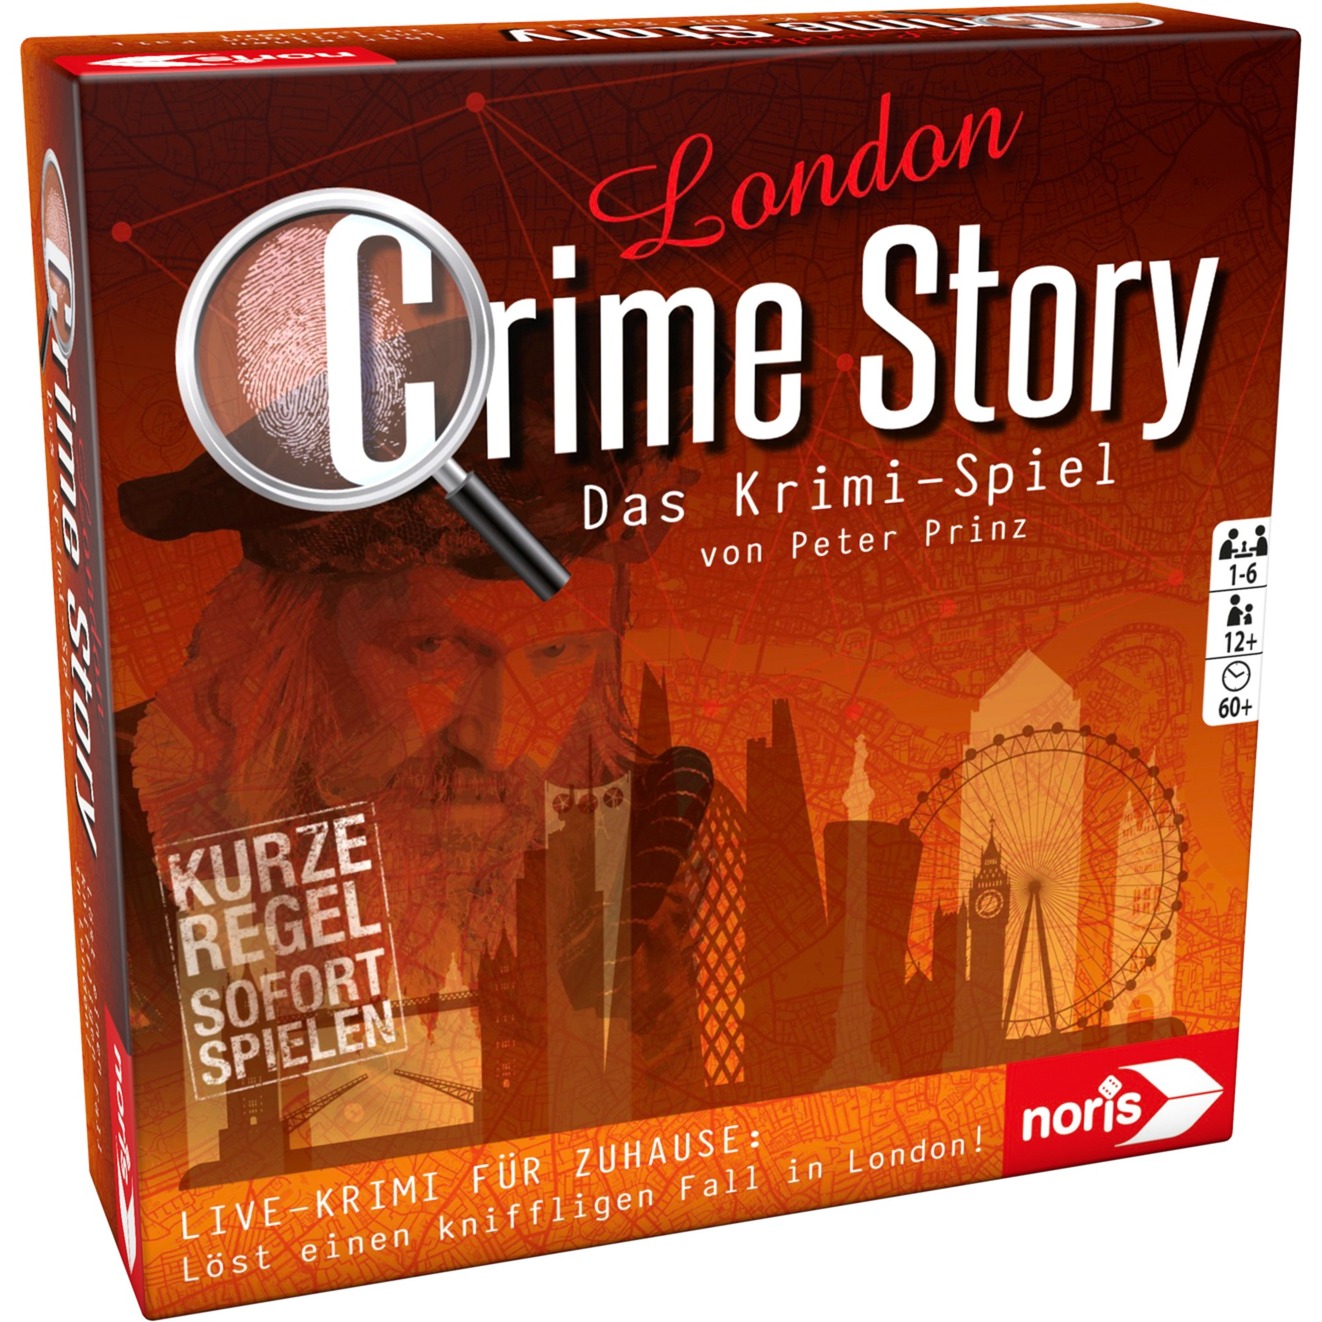 Image of Alternate - Crime Story - London, Partyspiel online einkaufen bei Alternate